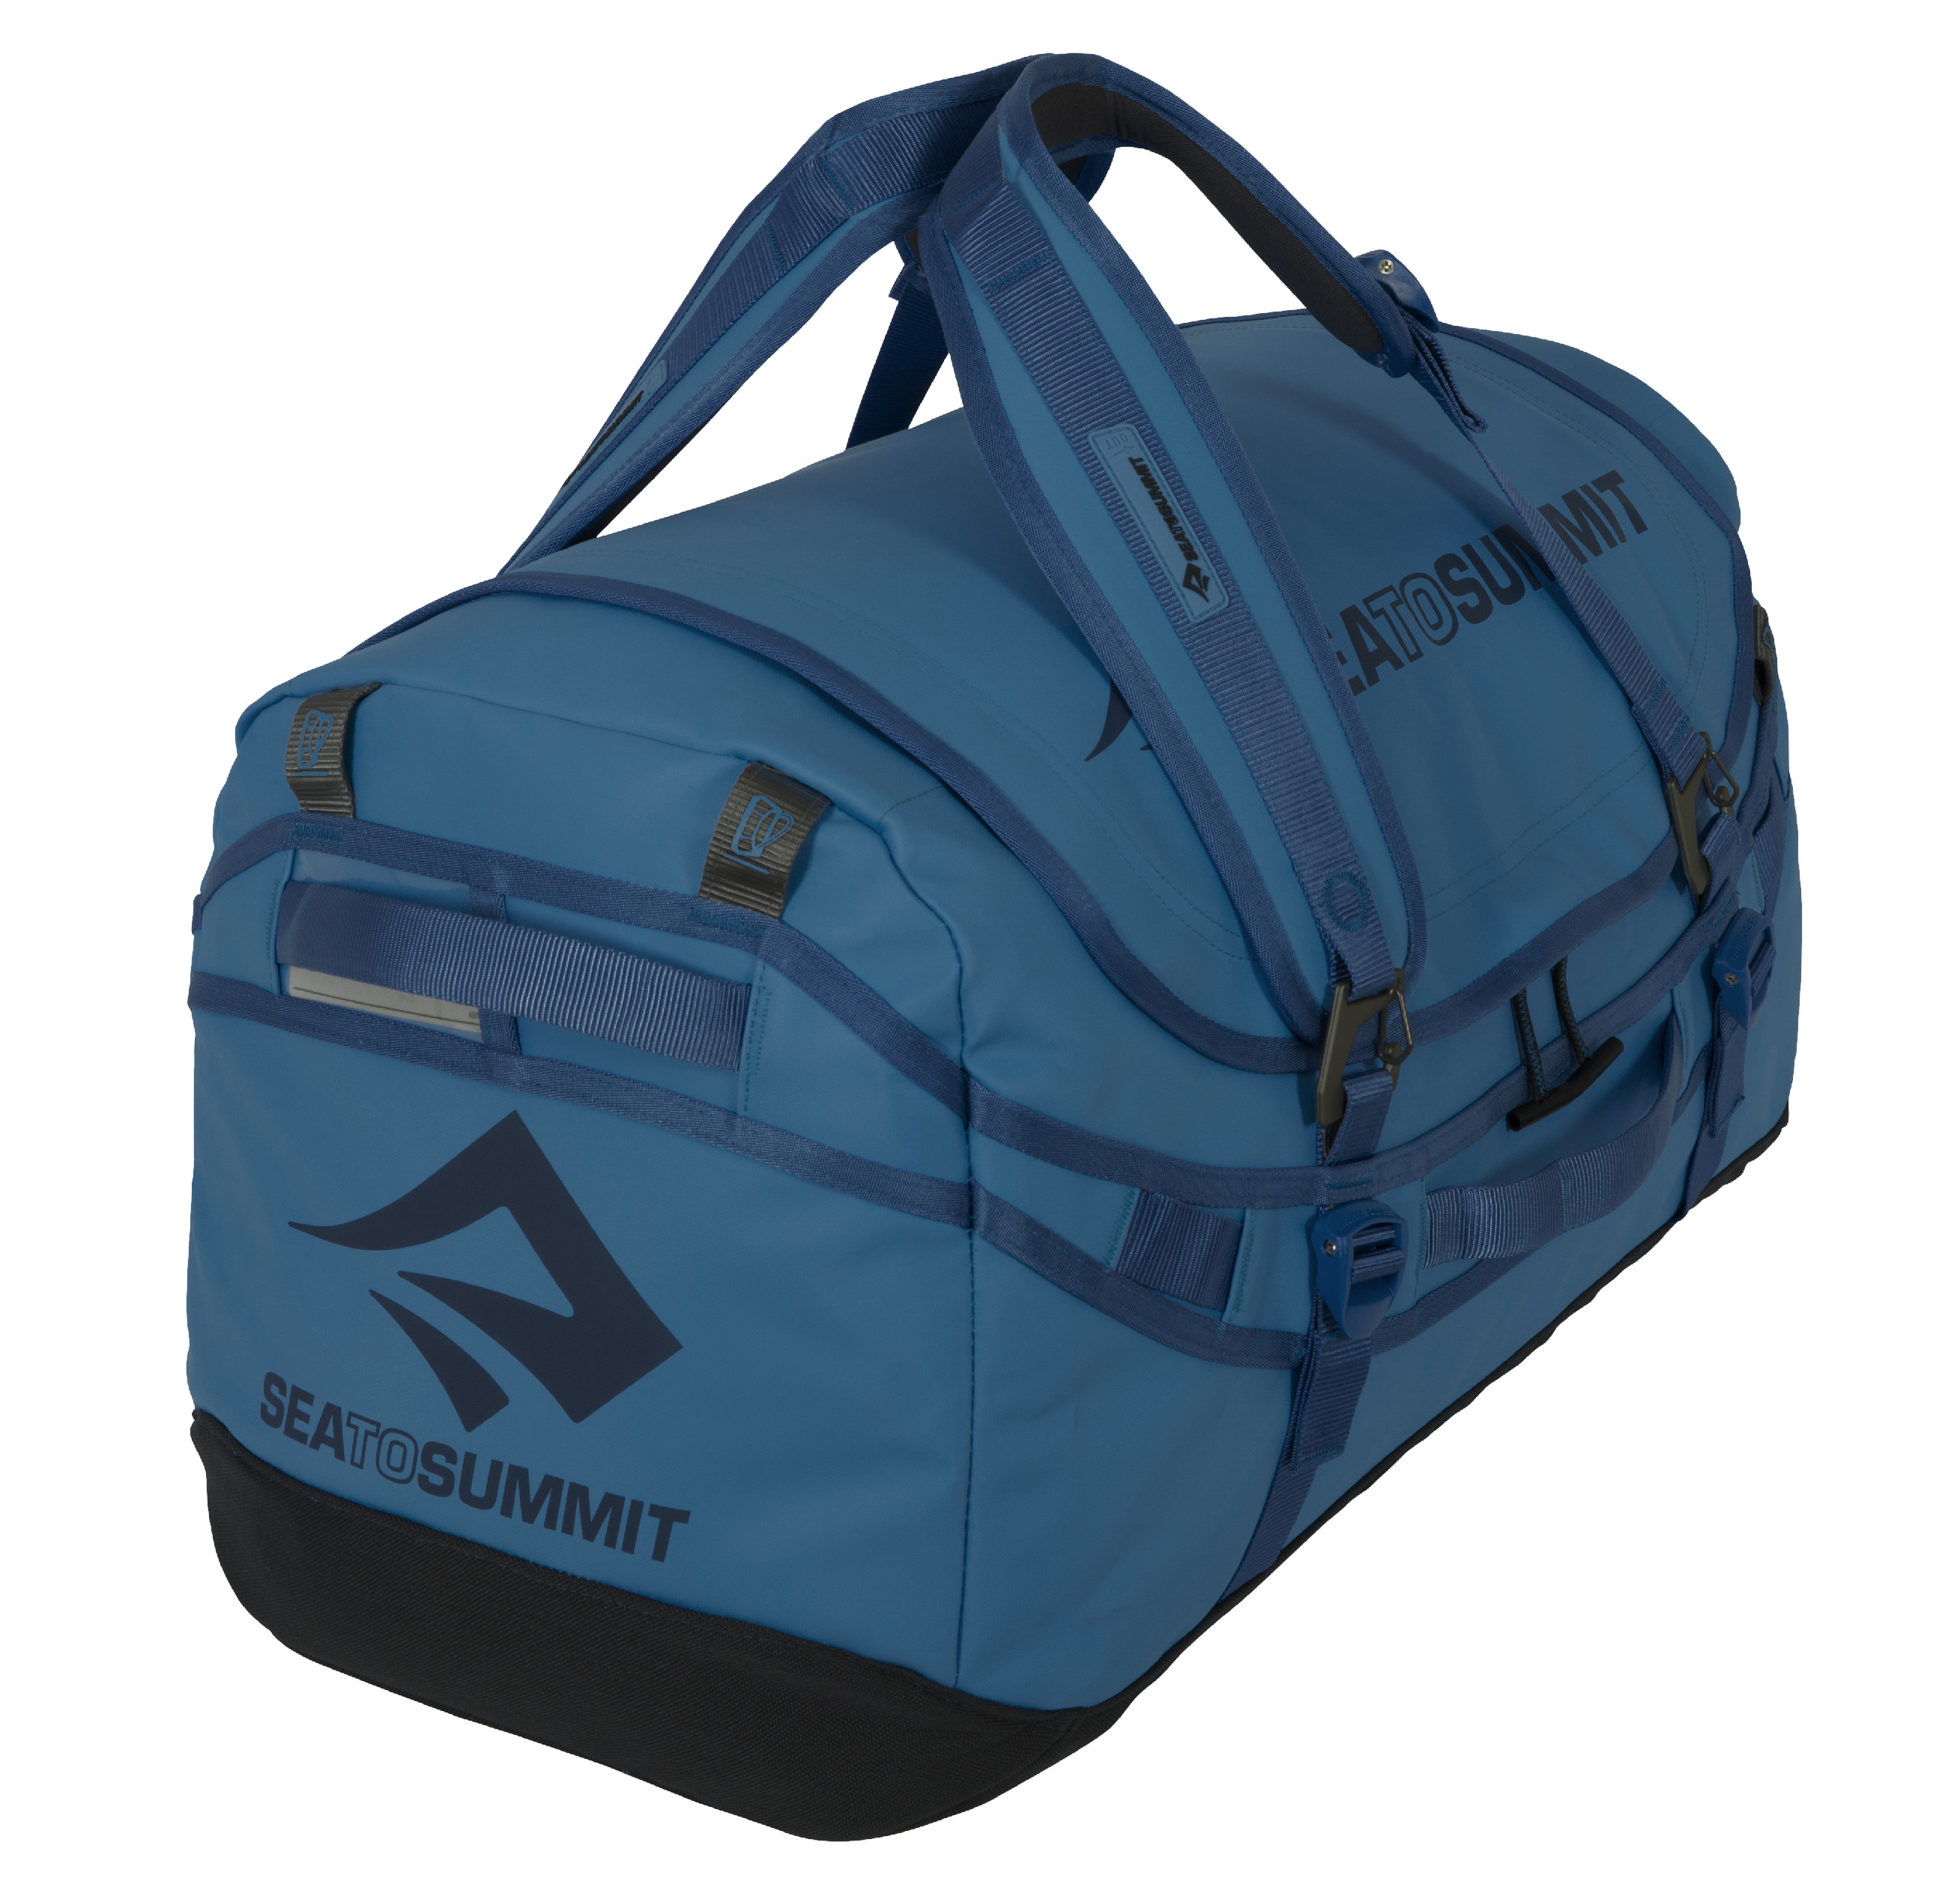 Cestovní taška Sea to Summit Duffle velikost: 65 litrů, barva: tmavě modrá